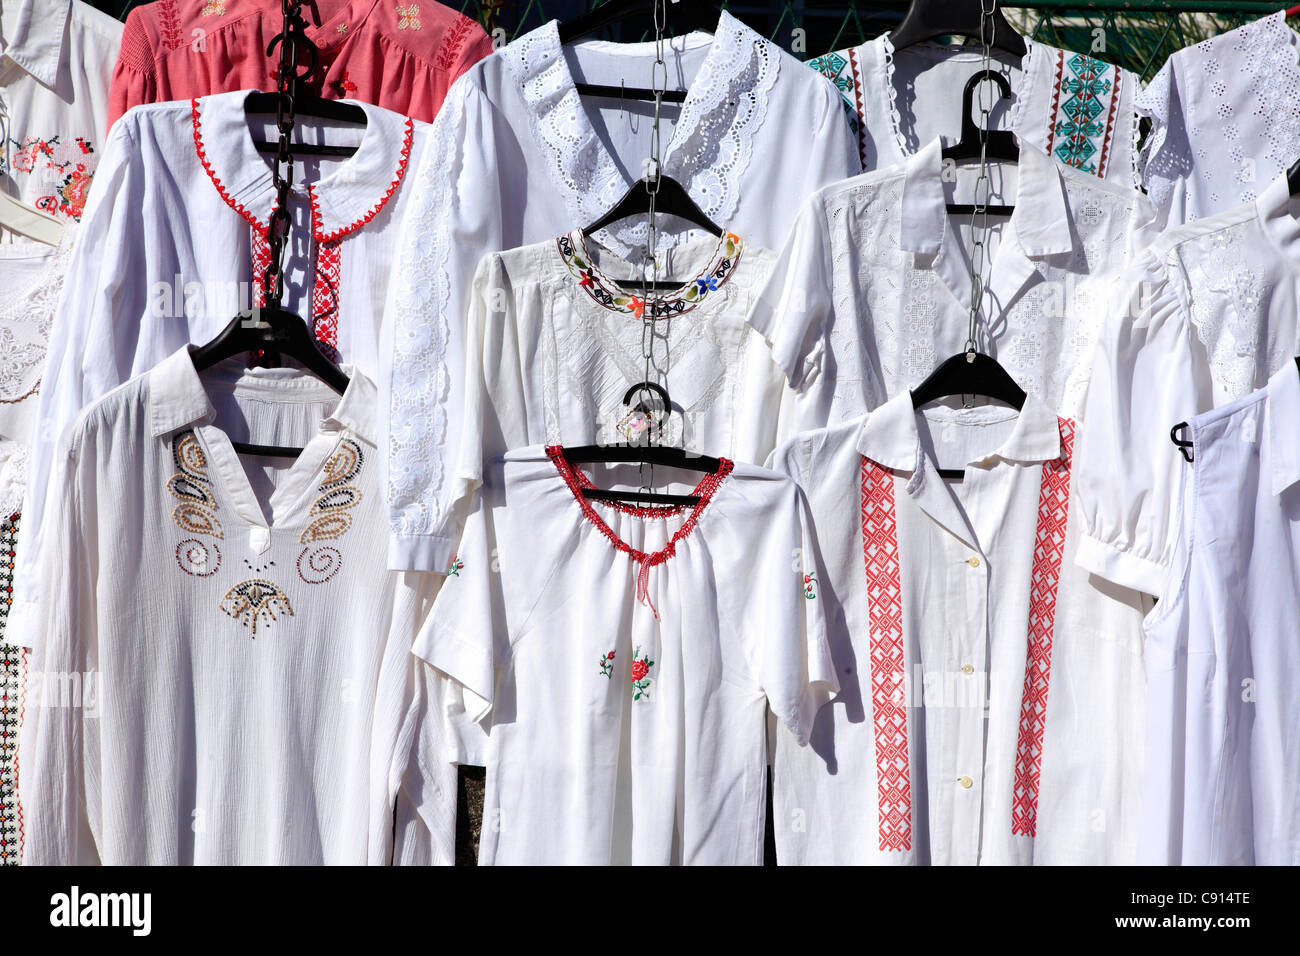 Geschäfte in Donji Milanovac bieten traditionell bestickte Hemden und viele andere gestickten oder handgemachten Waren feil. Stockfoto